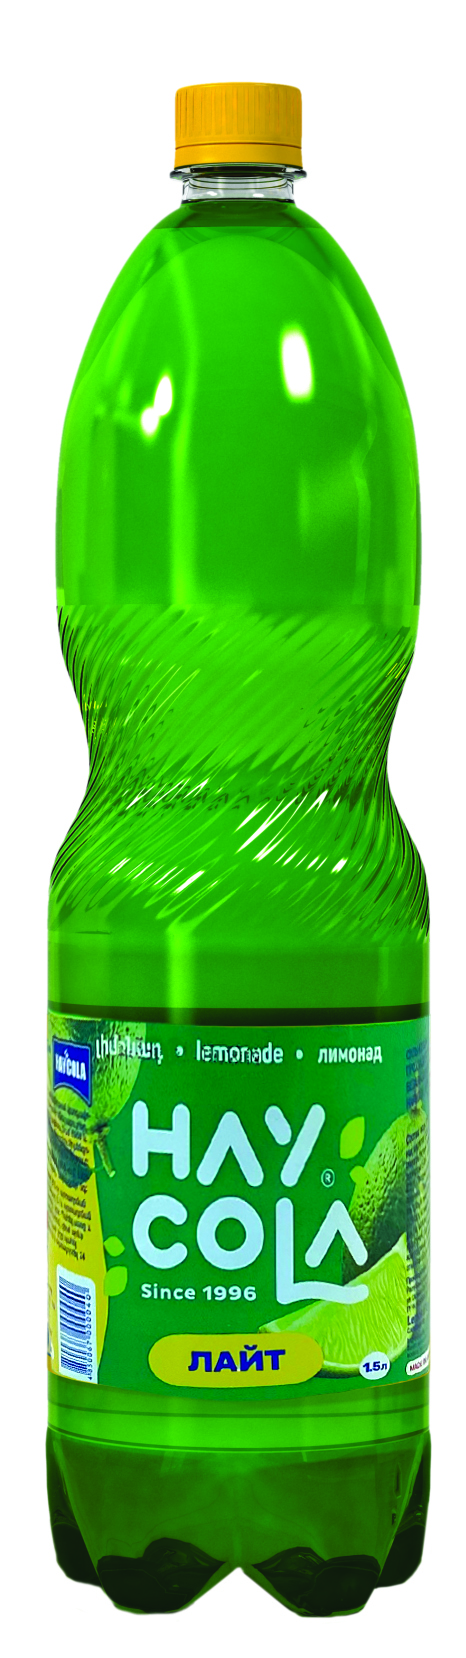 հայ կոլա գազավորված ըմպելիքներ